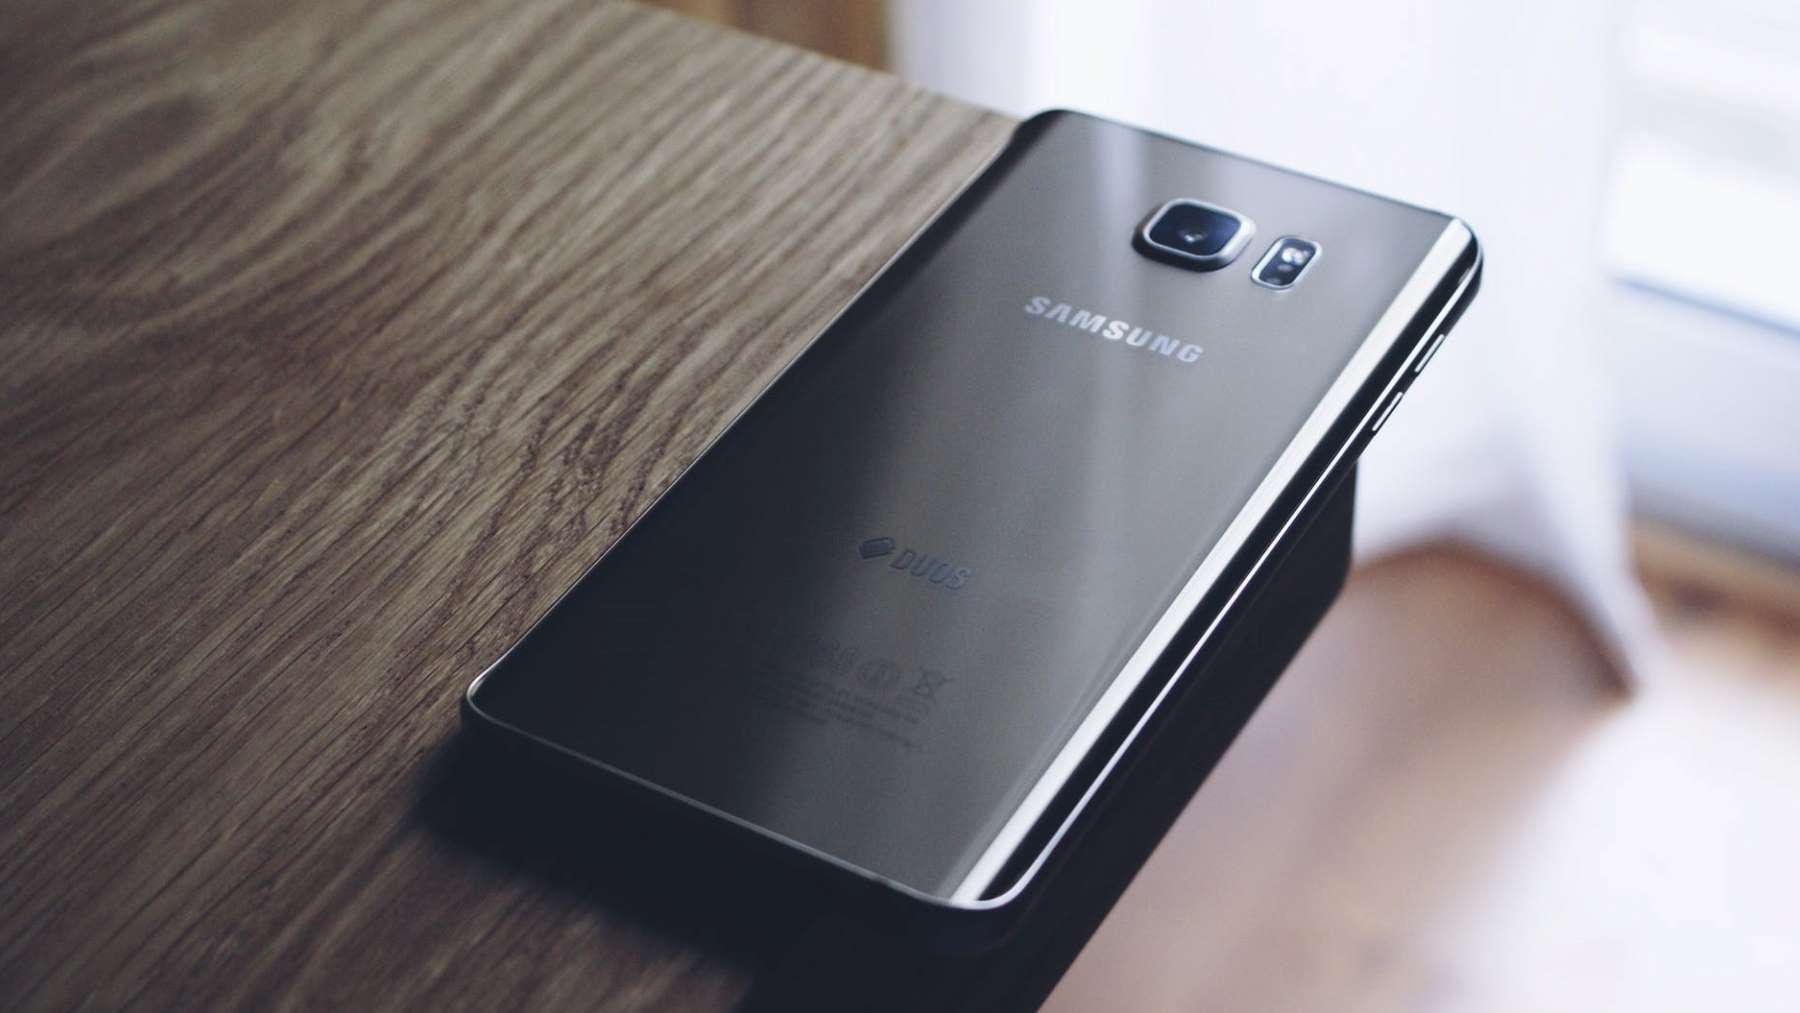 Samsung confía en que sus ventas alcanzarán entre julio y septiembre alrededor de 46.970 millones de euros